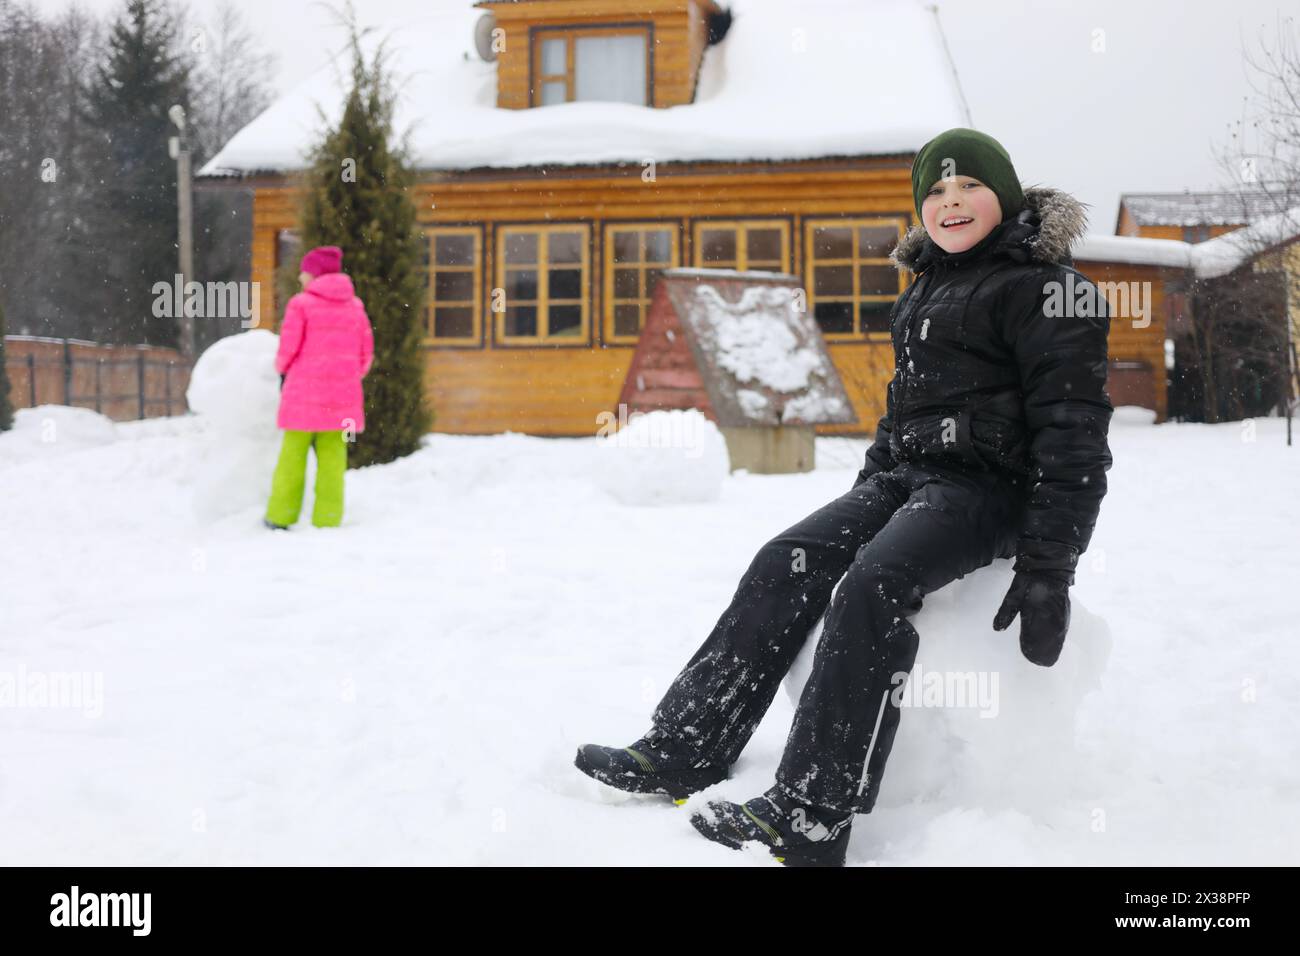 Junge sitzt in einem großen Schneeball, Mädchen macht Schneemänner in der Nähe von hölzernen Landhäusern während des Schneefalls am Wintertag, Mädchen außer Fokus Stockfoto